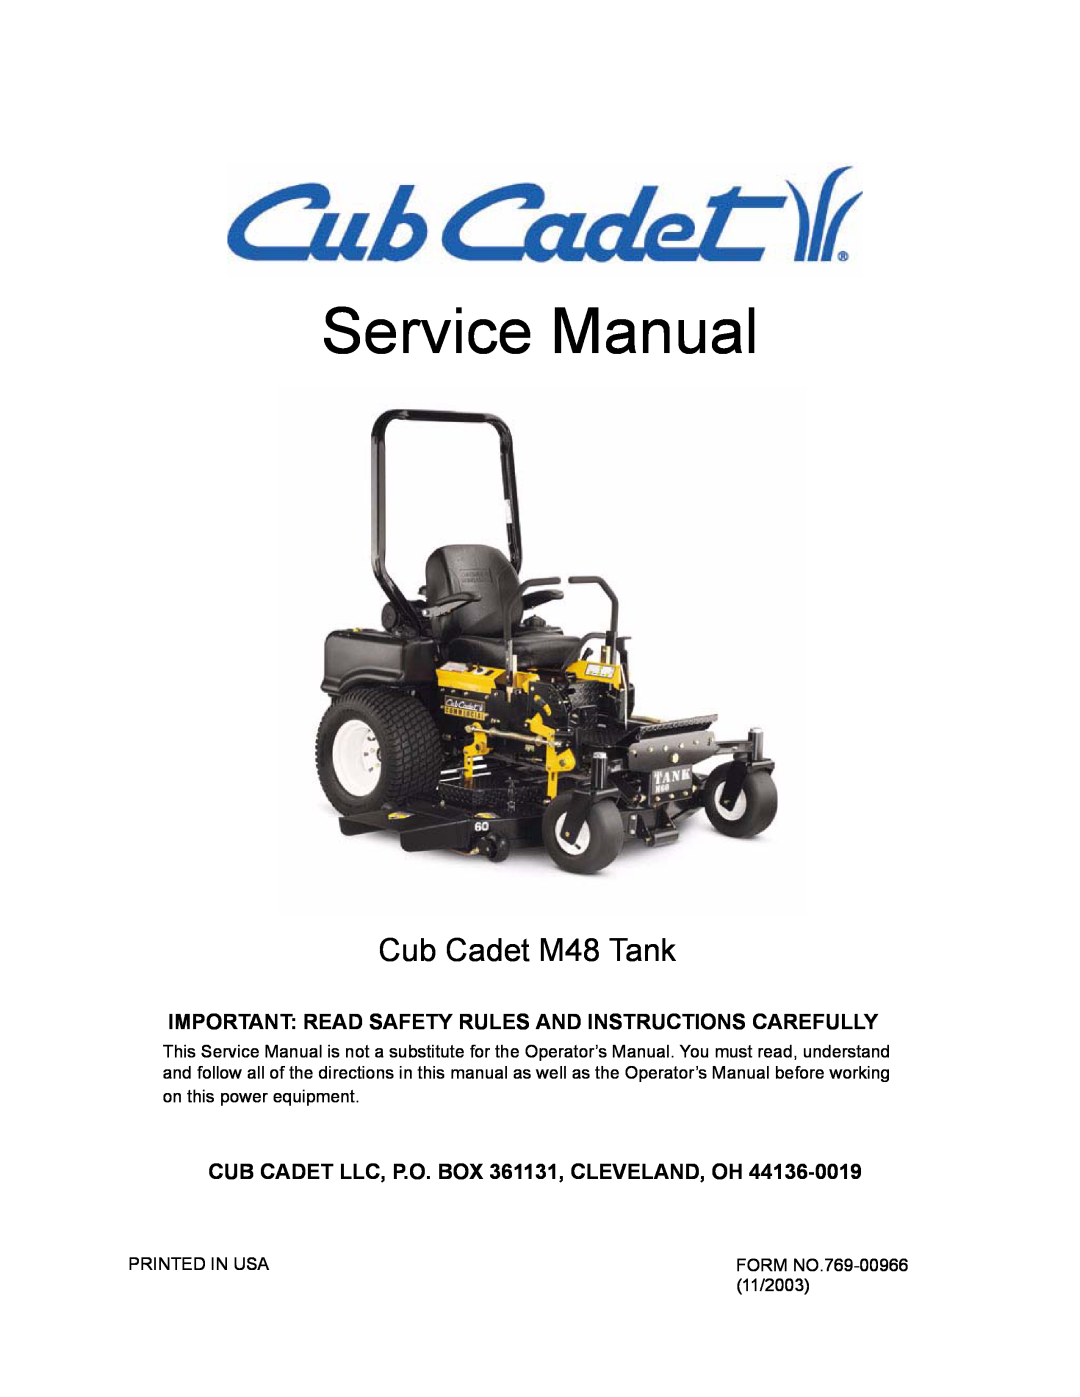 Cub Cadet service manual CUB CADET LLC, P.O. BOX 361131, CLEVELAND, OH, Service Manual, Cub Cadet M48 Tank 